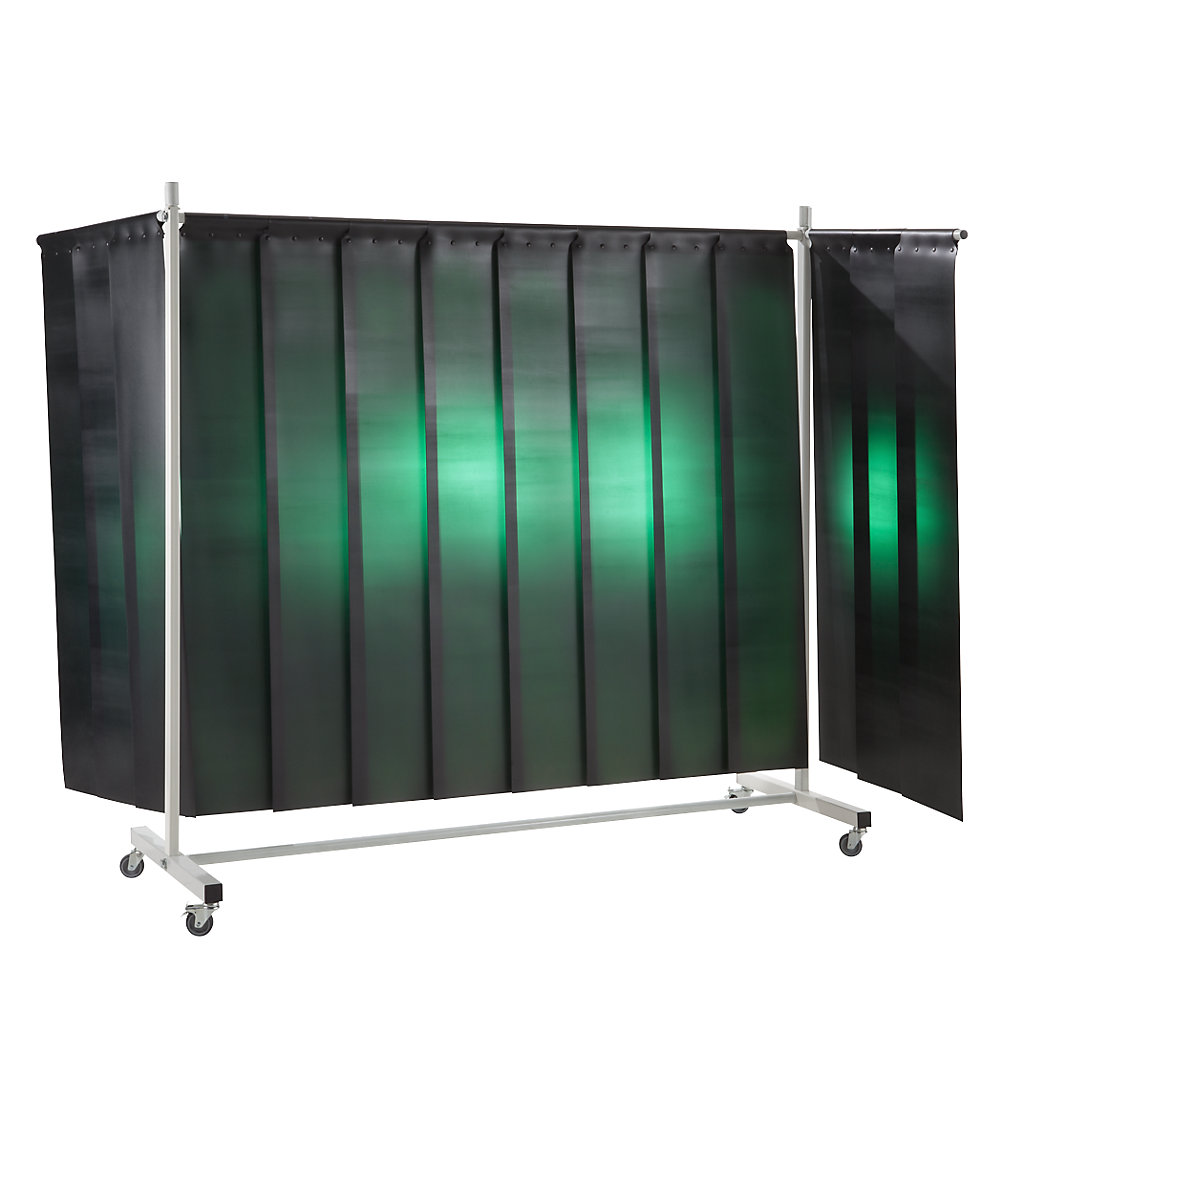 Schweißer-Schutzwand, mobil, mit Lamellenvorhang, dunkelgrün, BxH 3700 x 2100 mm, 3-teilig